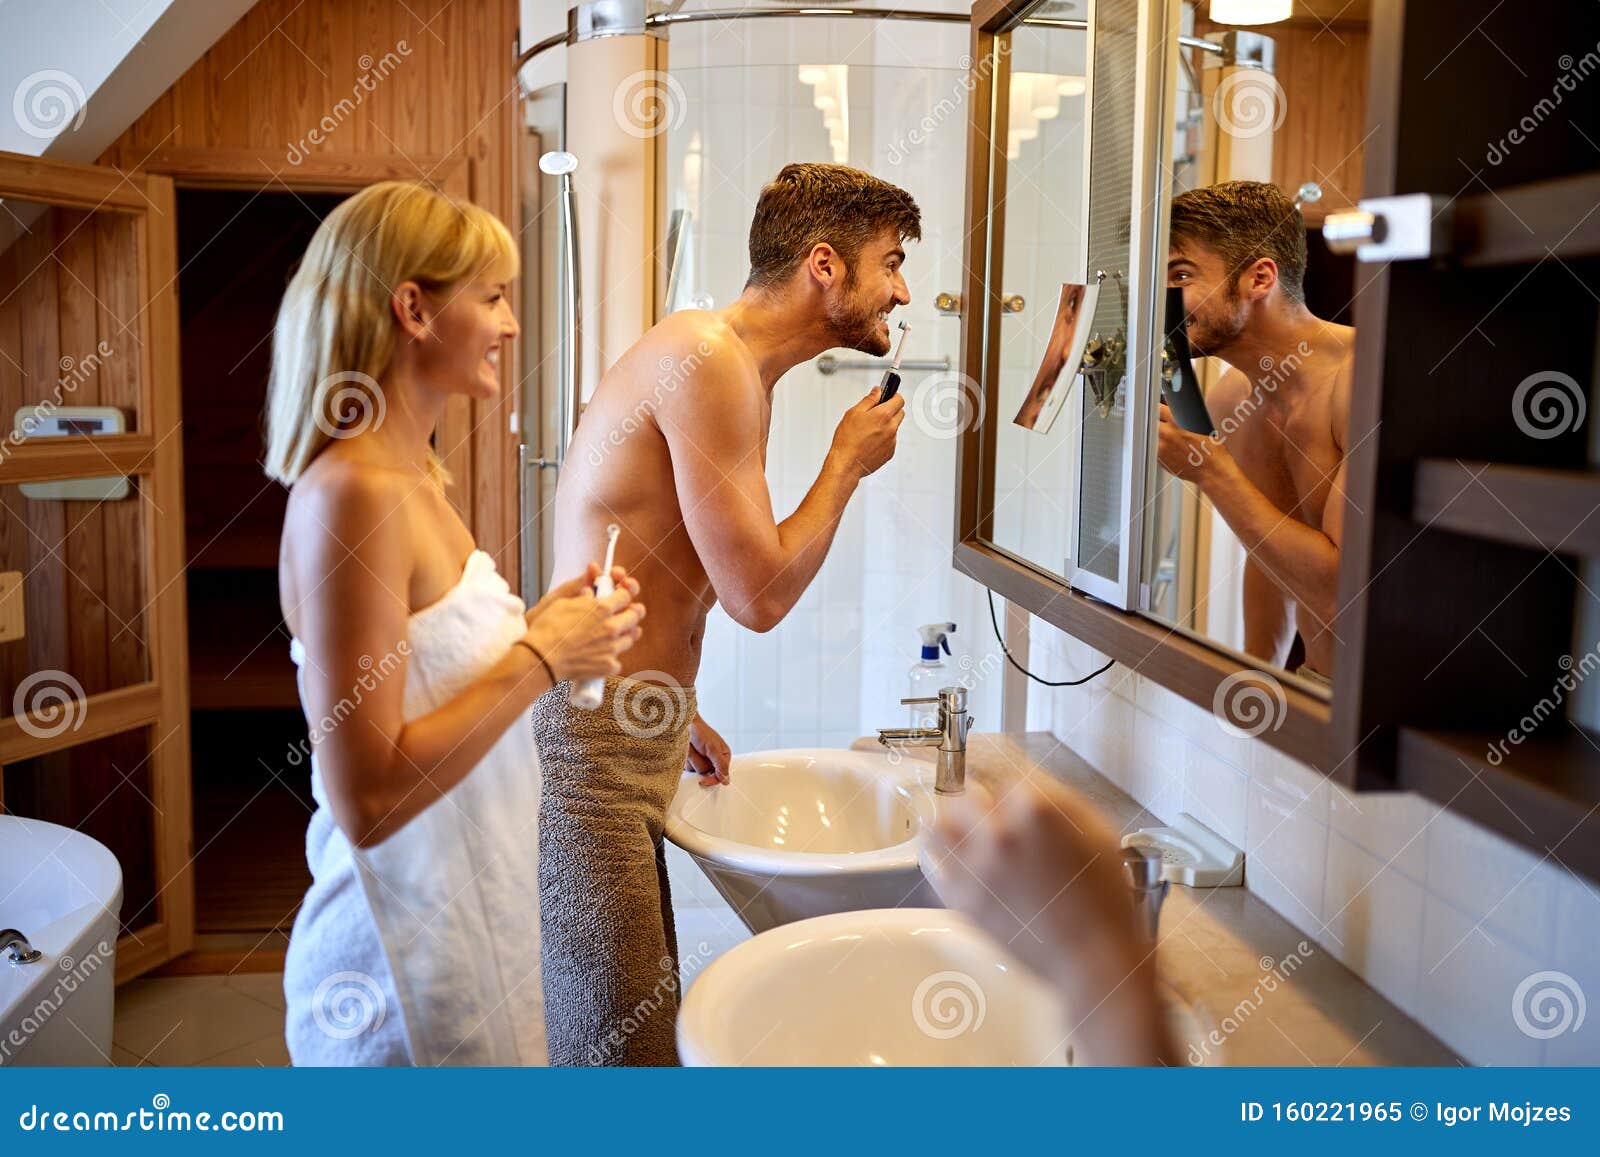 С женой друга в ванне. Пара перед зеркалом в ванной. Двое в ванной. Пара чистит зубы в ванной. Чистка ванной паром.